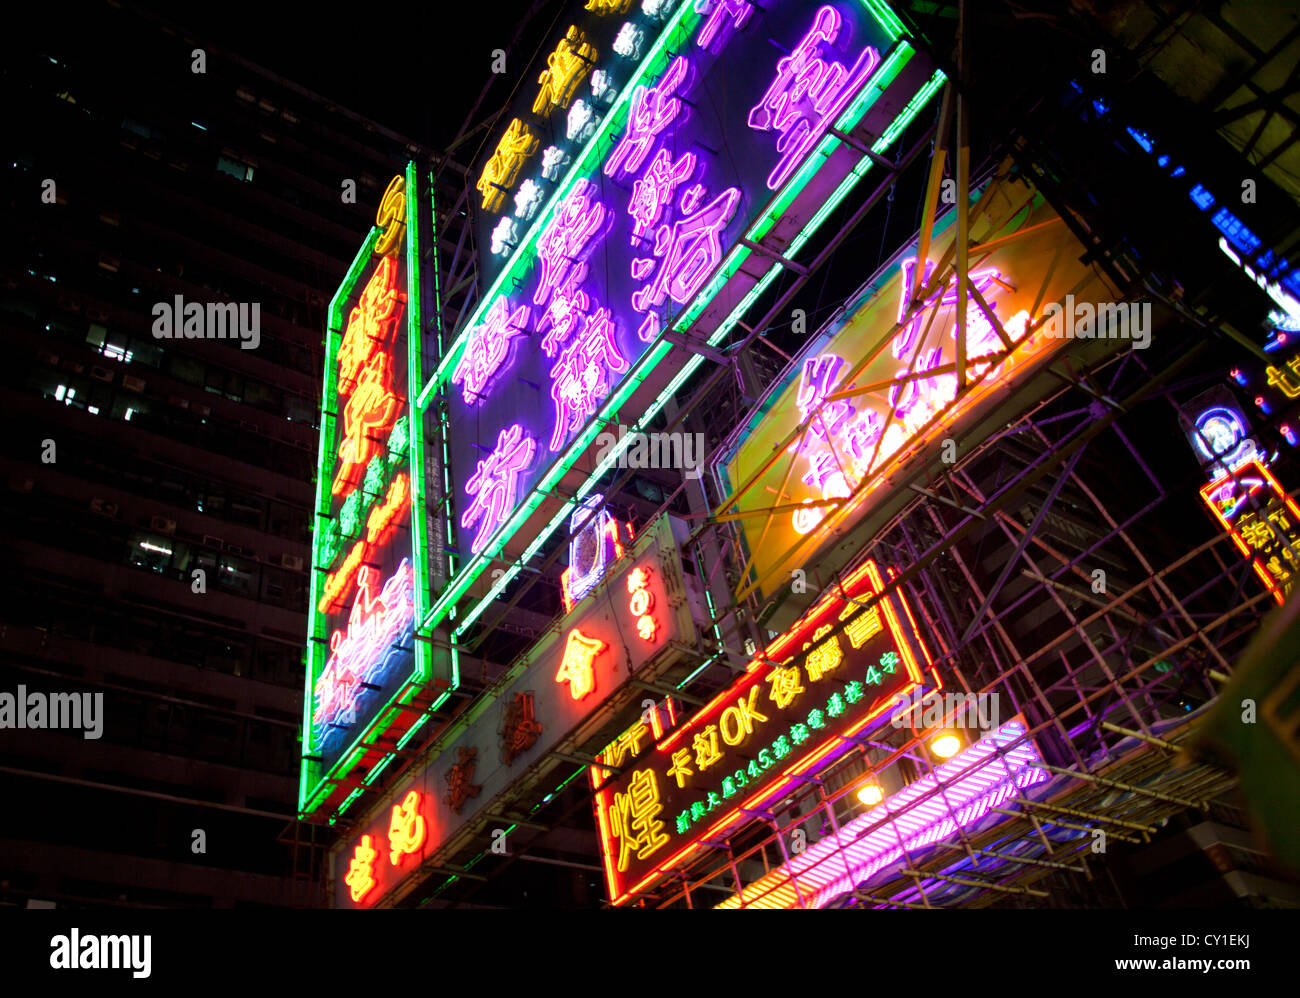 La vie nocturne à Hongkong Banque D'Images